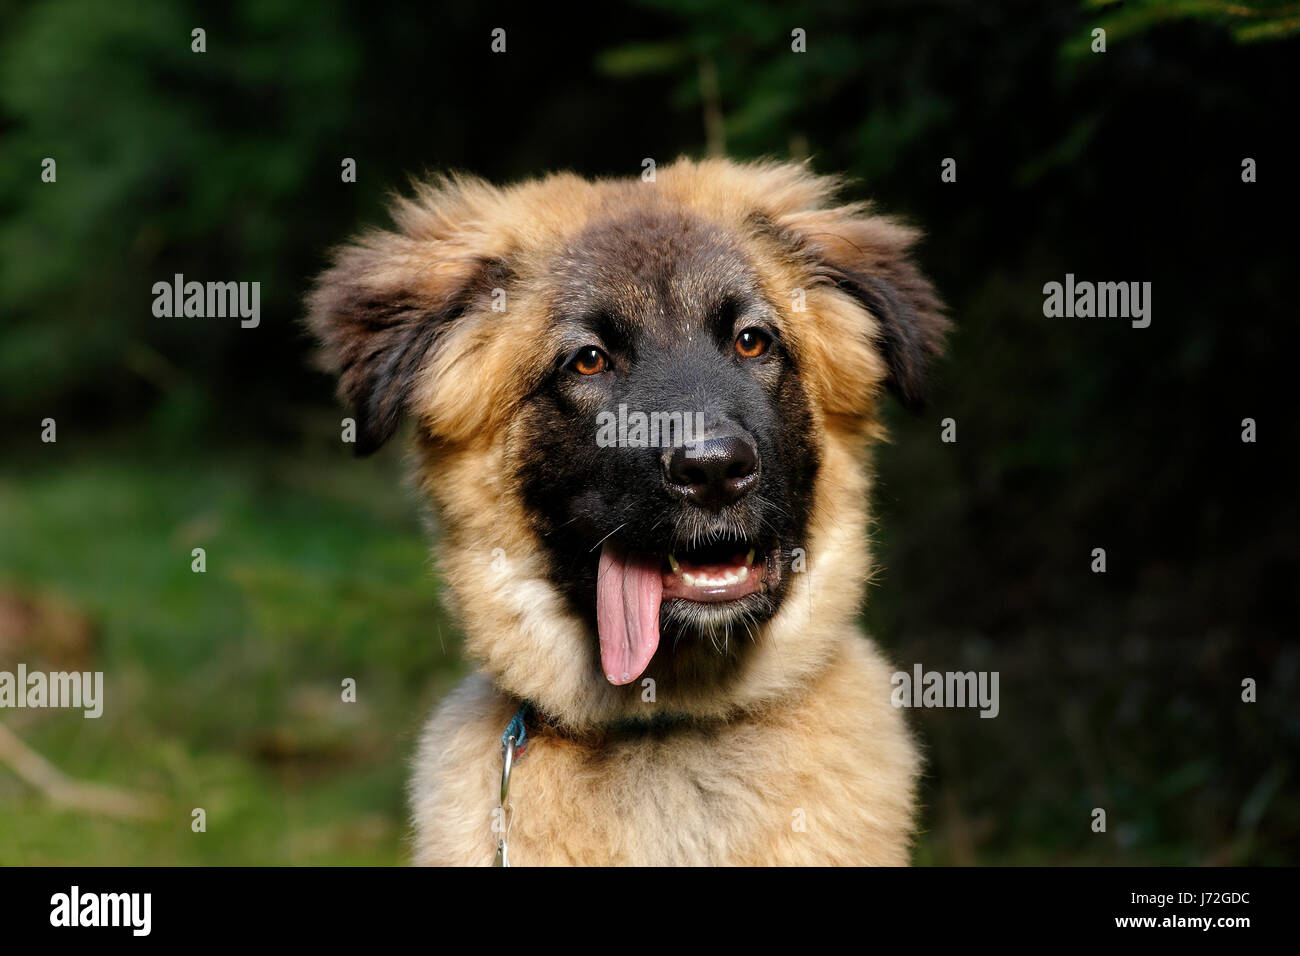 Cane pastore tedesco pastore tedesco cane cucciolo di cane di attacco volto cane pastore tedesco Foto Stock